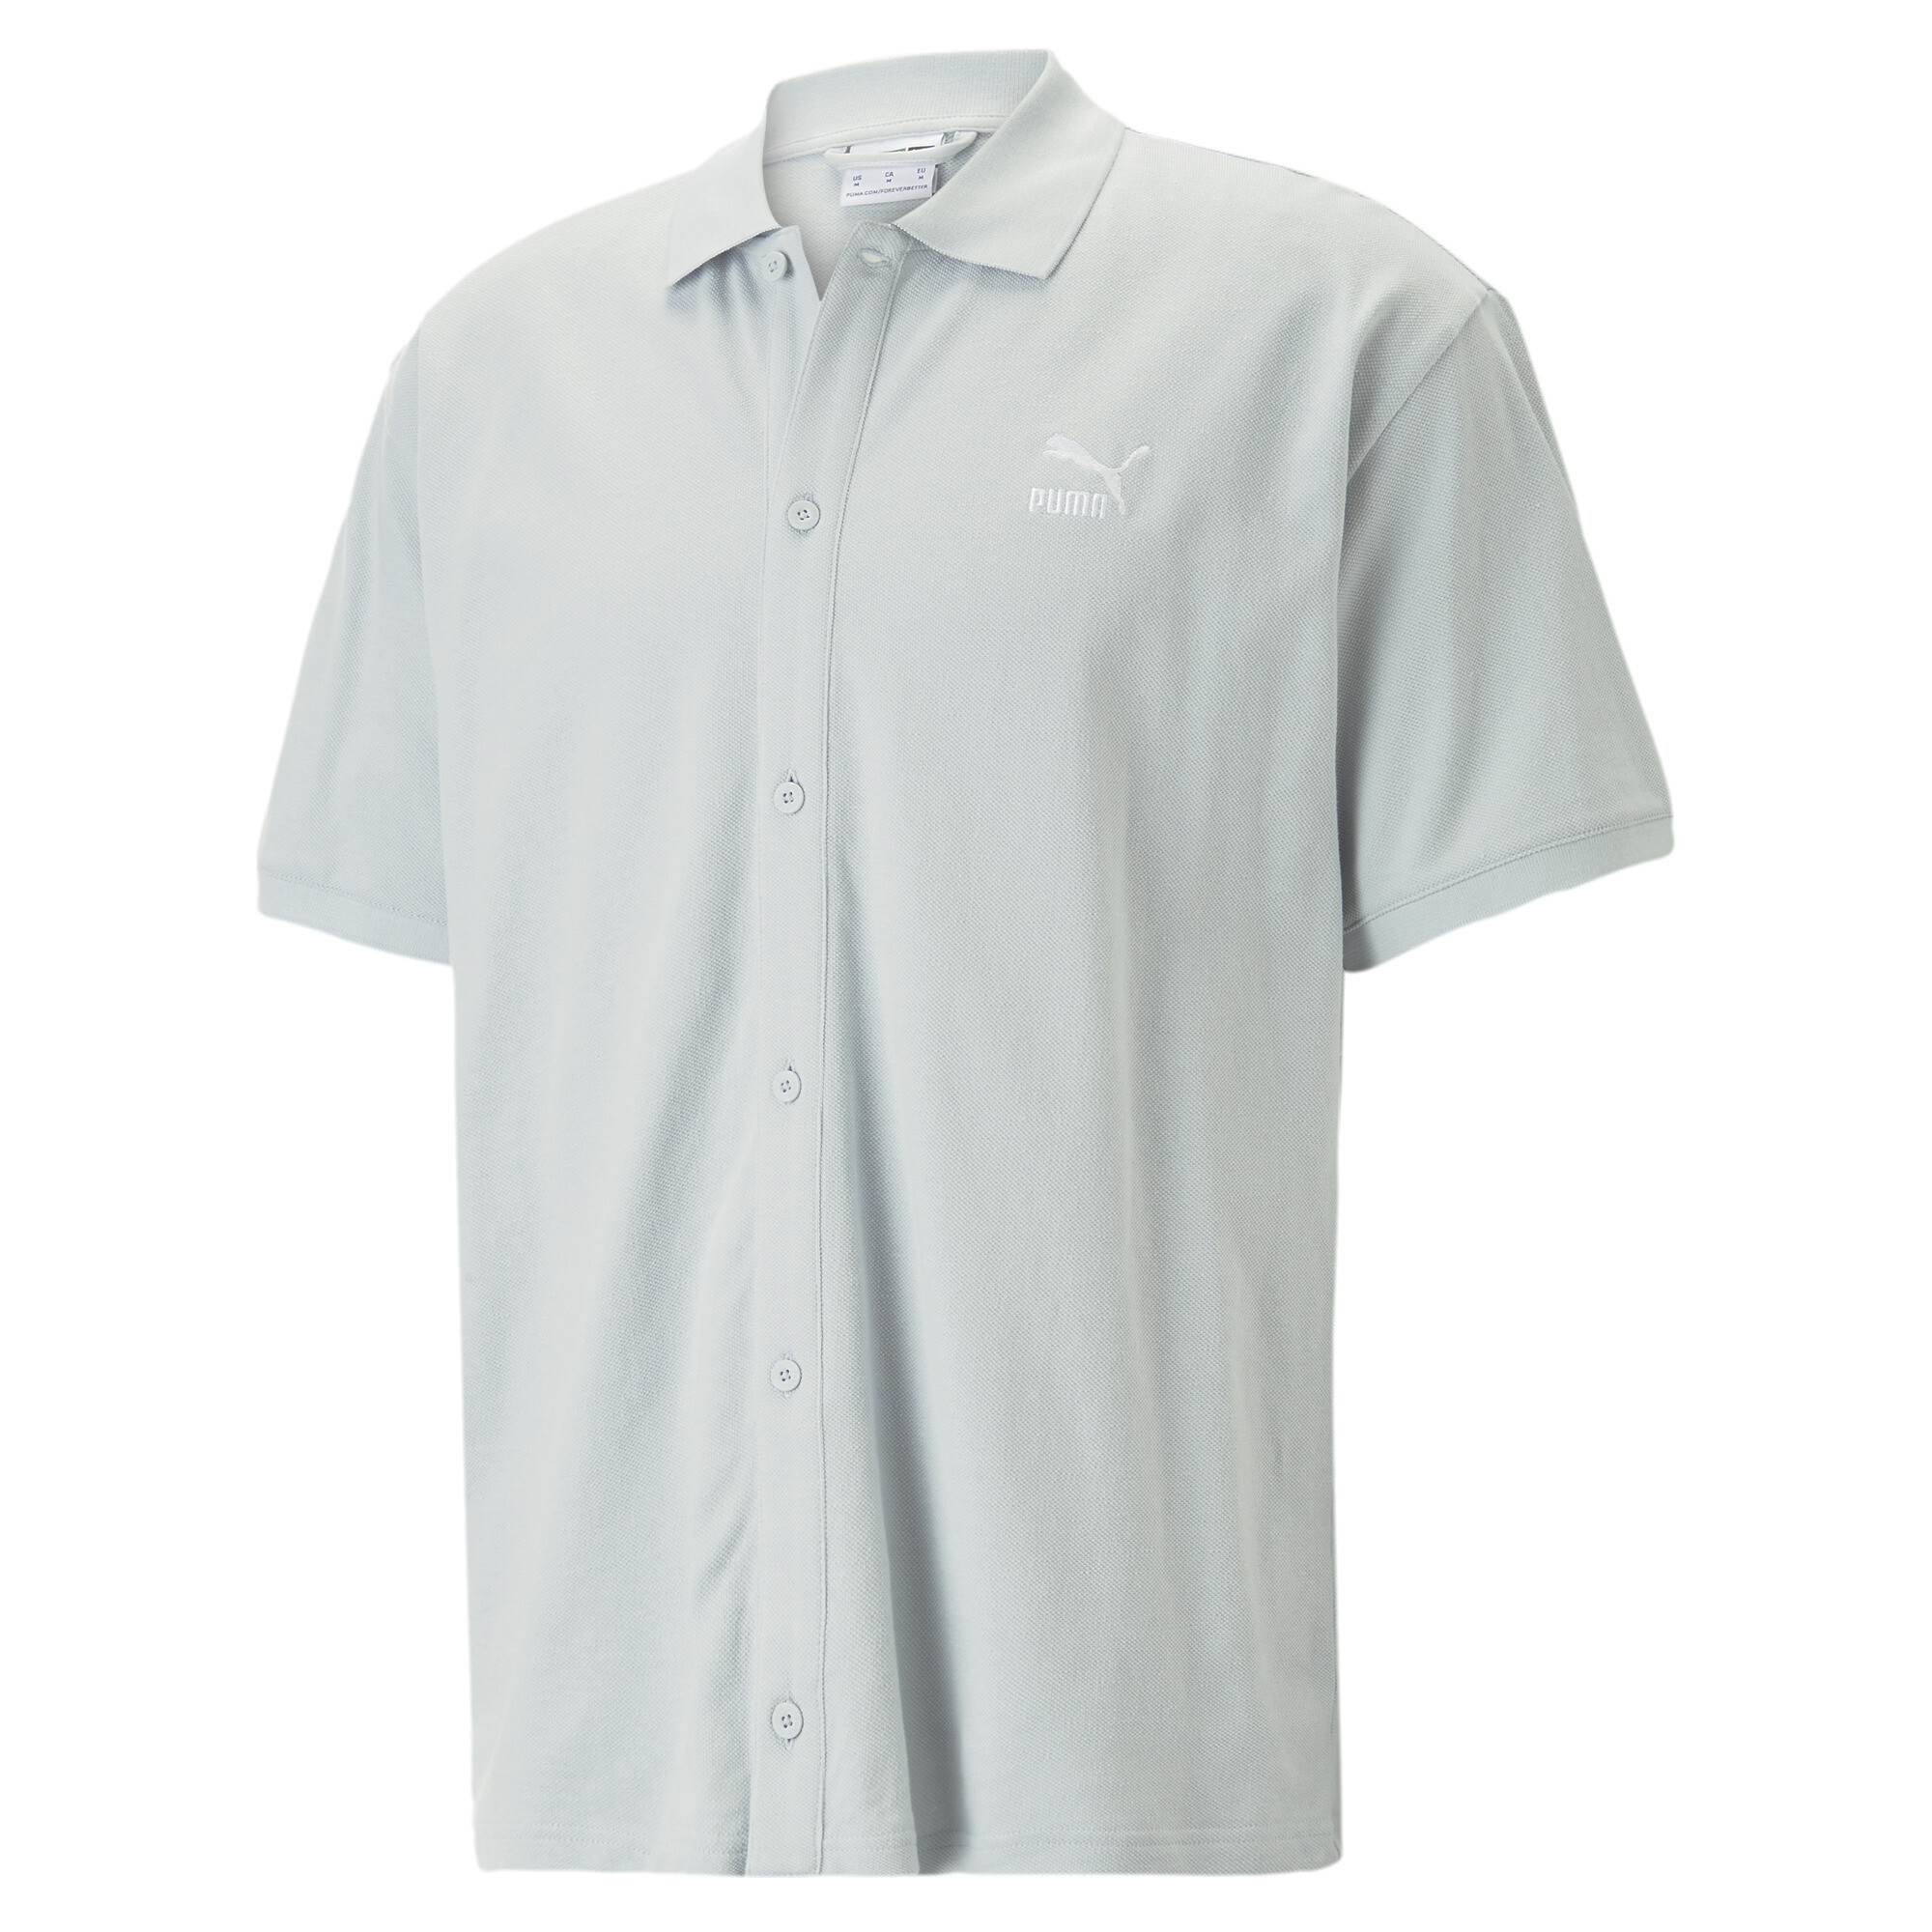 Men's PUMA Classics Pique Shirt Men In 30 - Gray, Size XS